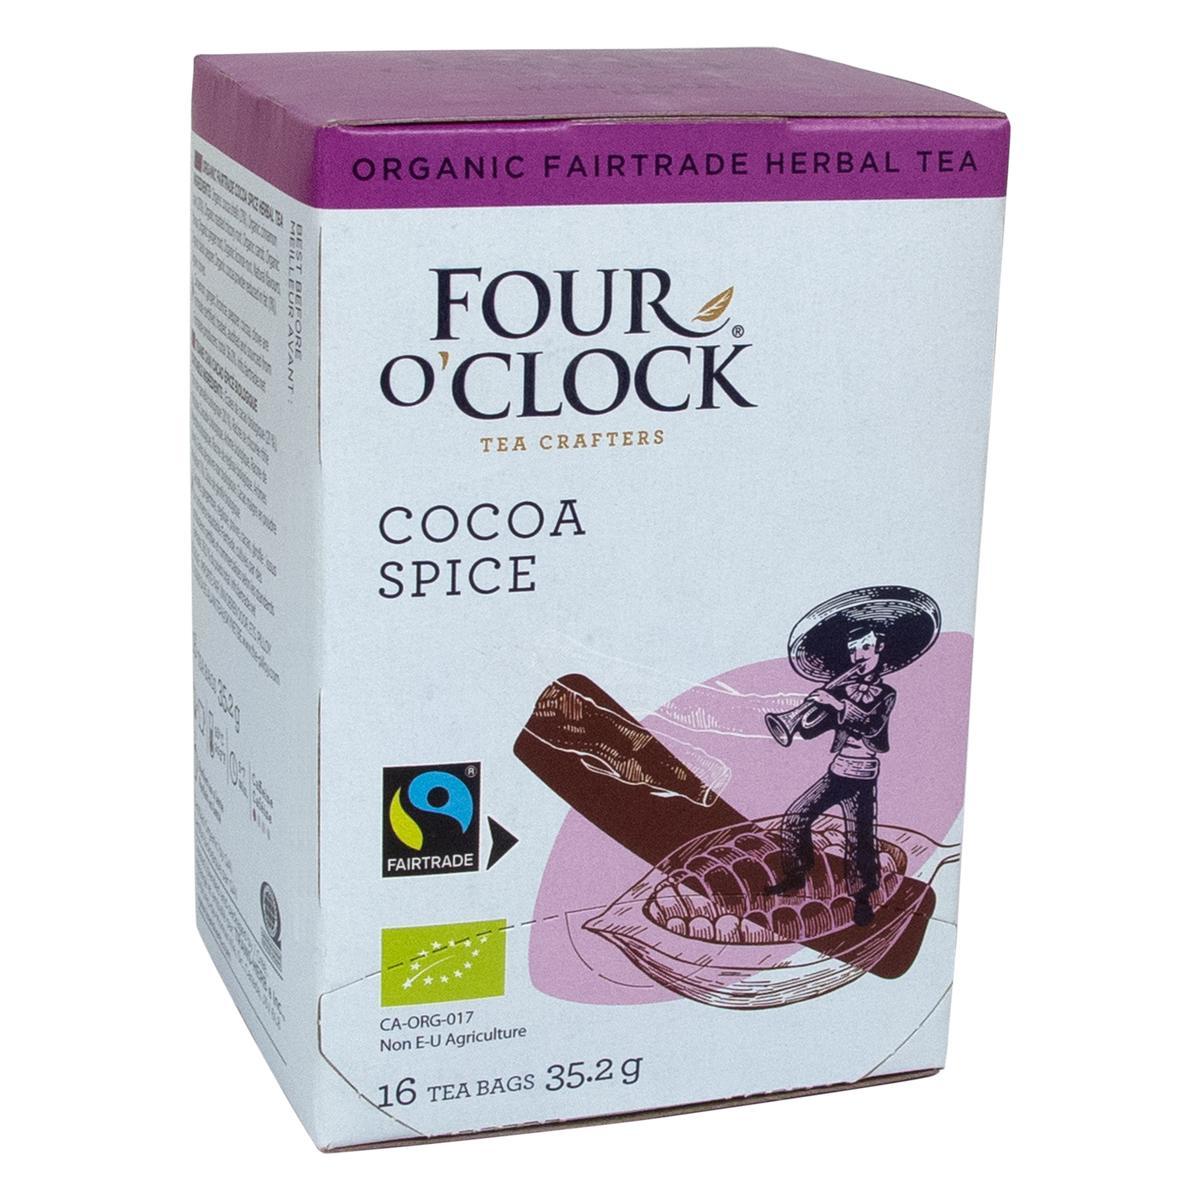 Four O’Clock's Four O'Clock COCOA SPICE'